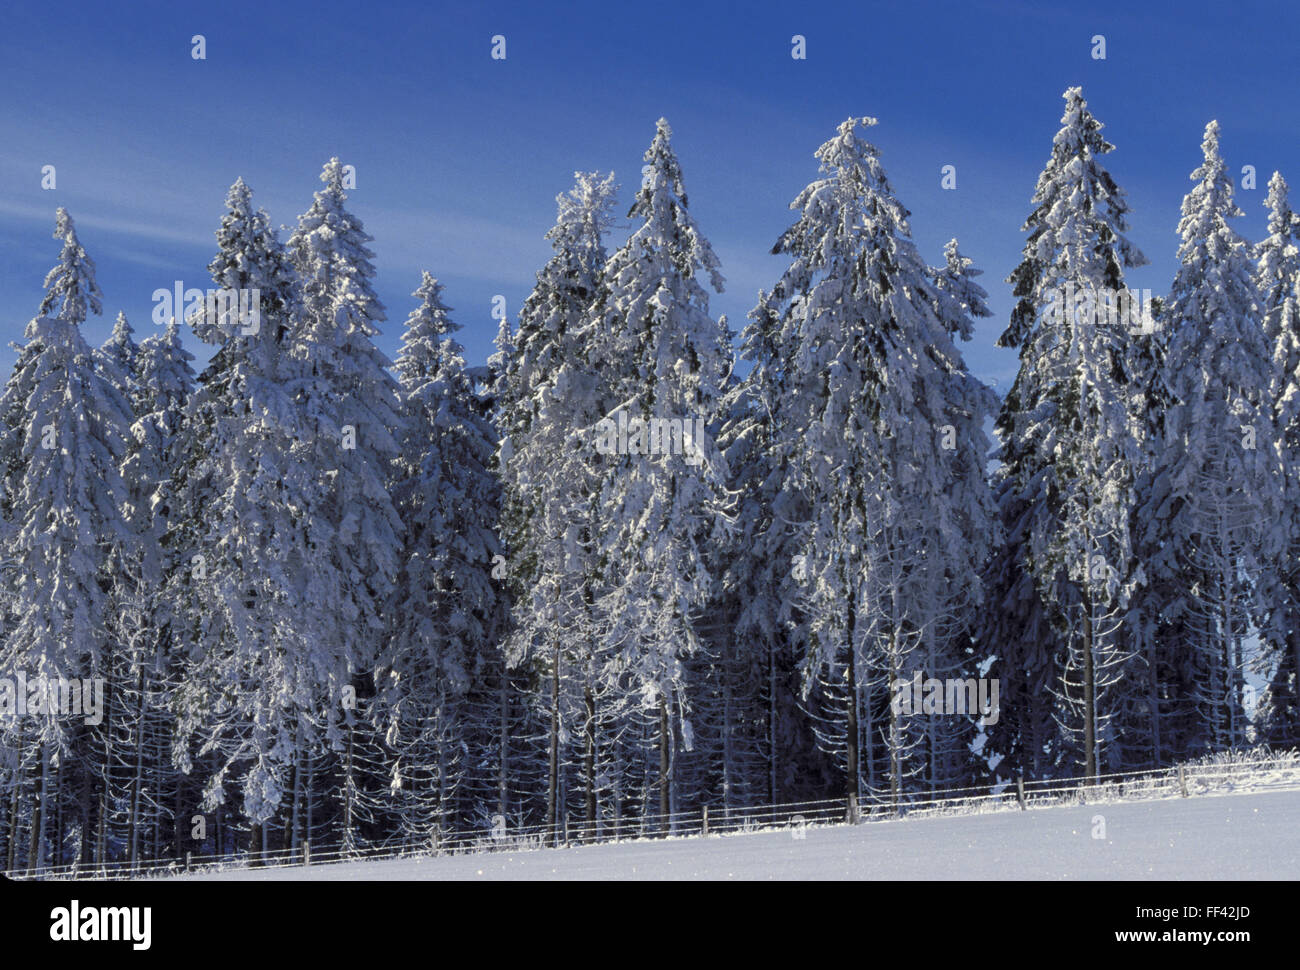 DEU, Germany, Sauerland region, snow-covered forest near the town Winterberg.  DEU, Germany, Sauerland, verschneiter Wald nahe W Stock Photo